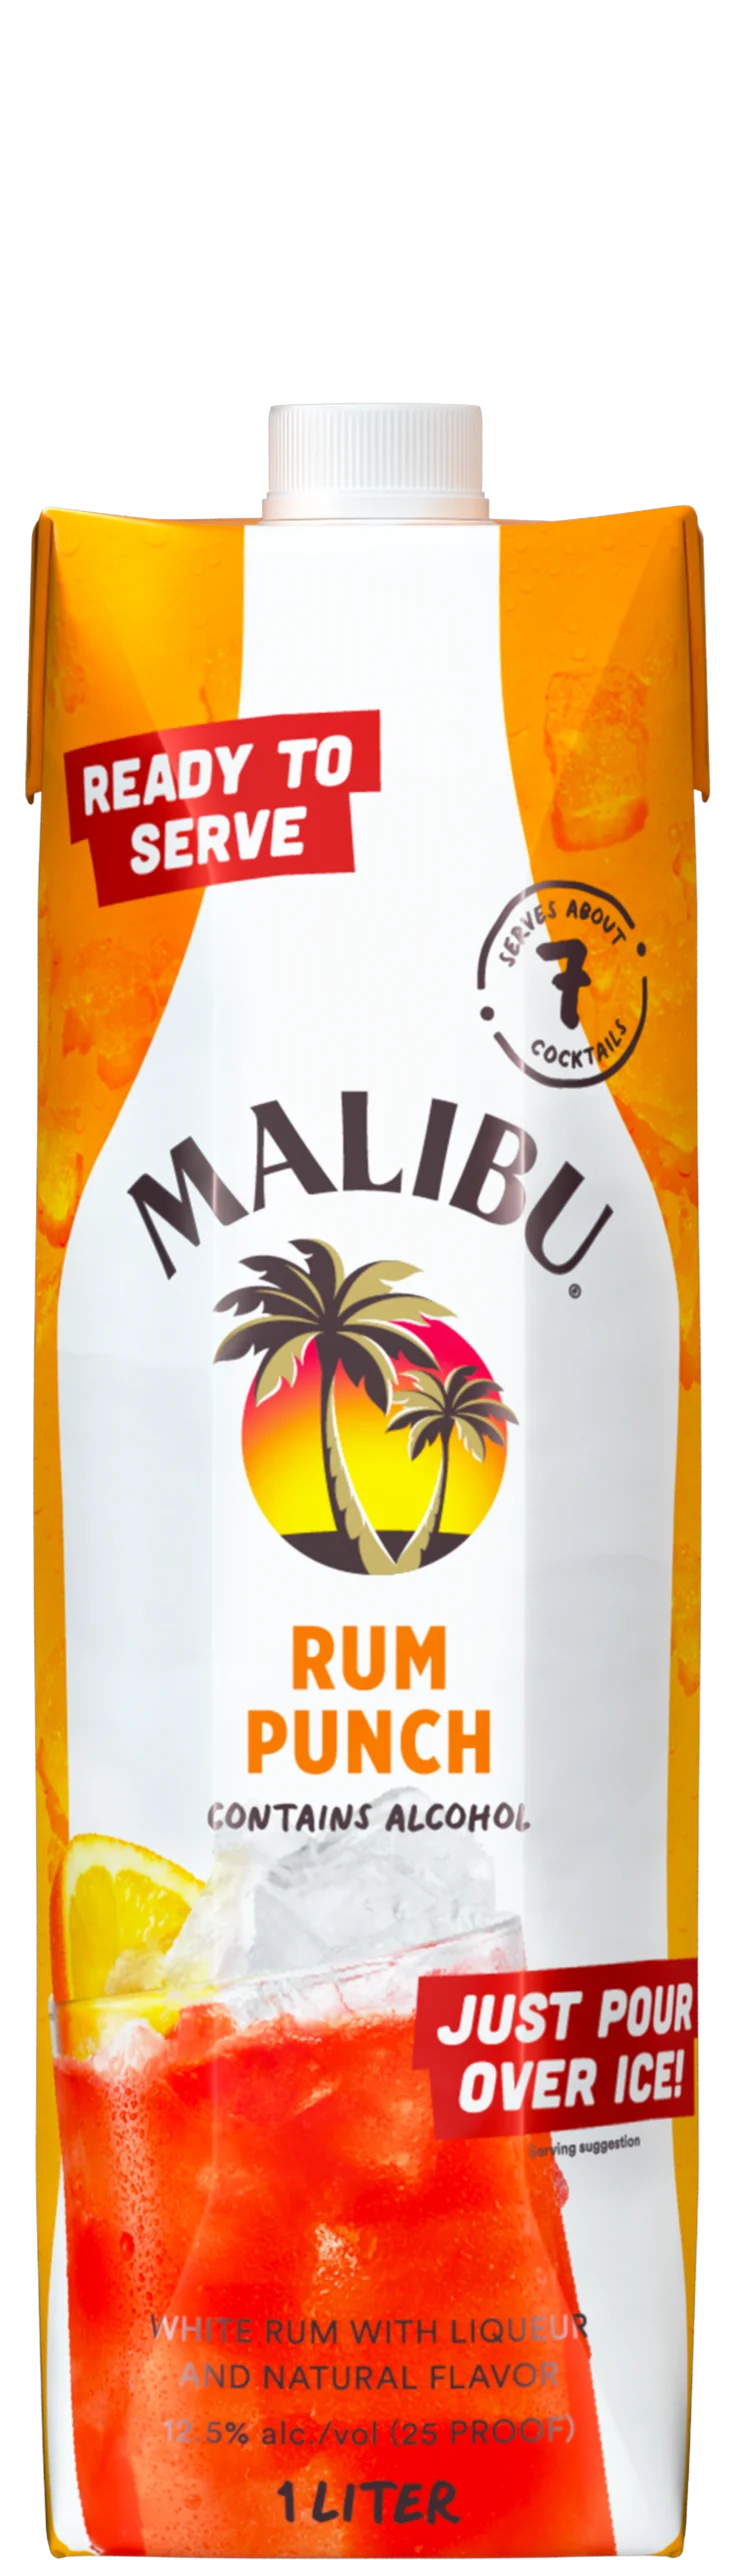 Malibu RTS rum punch